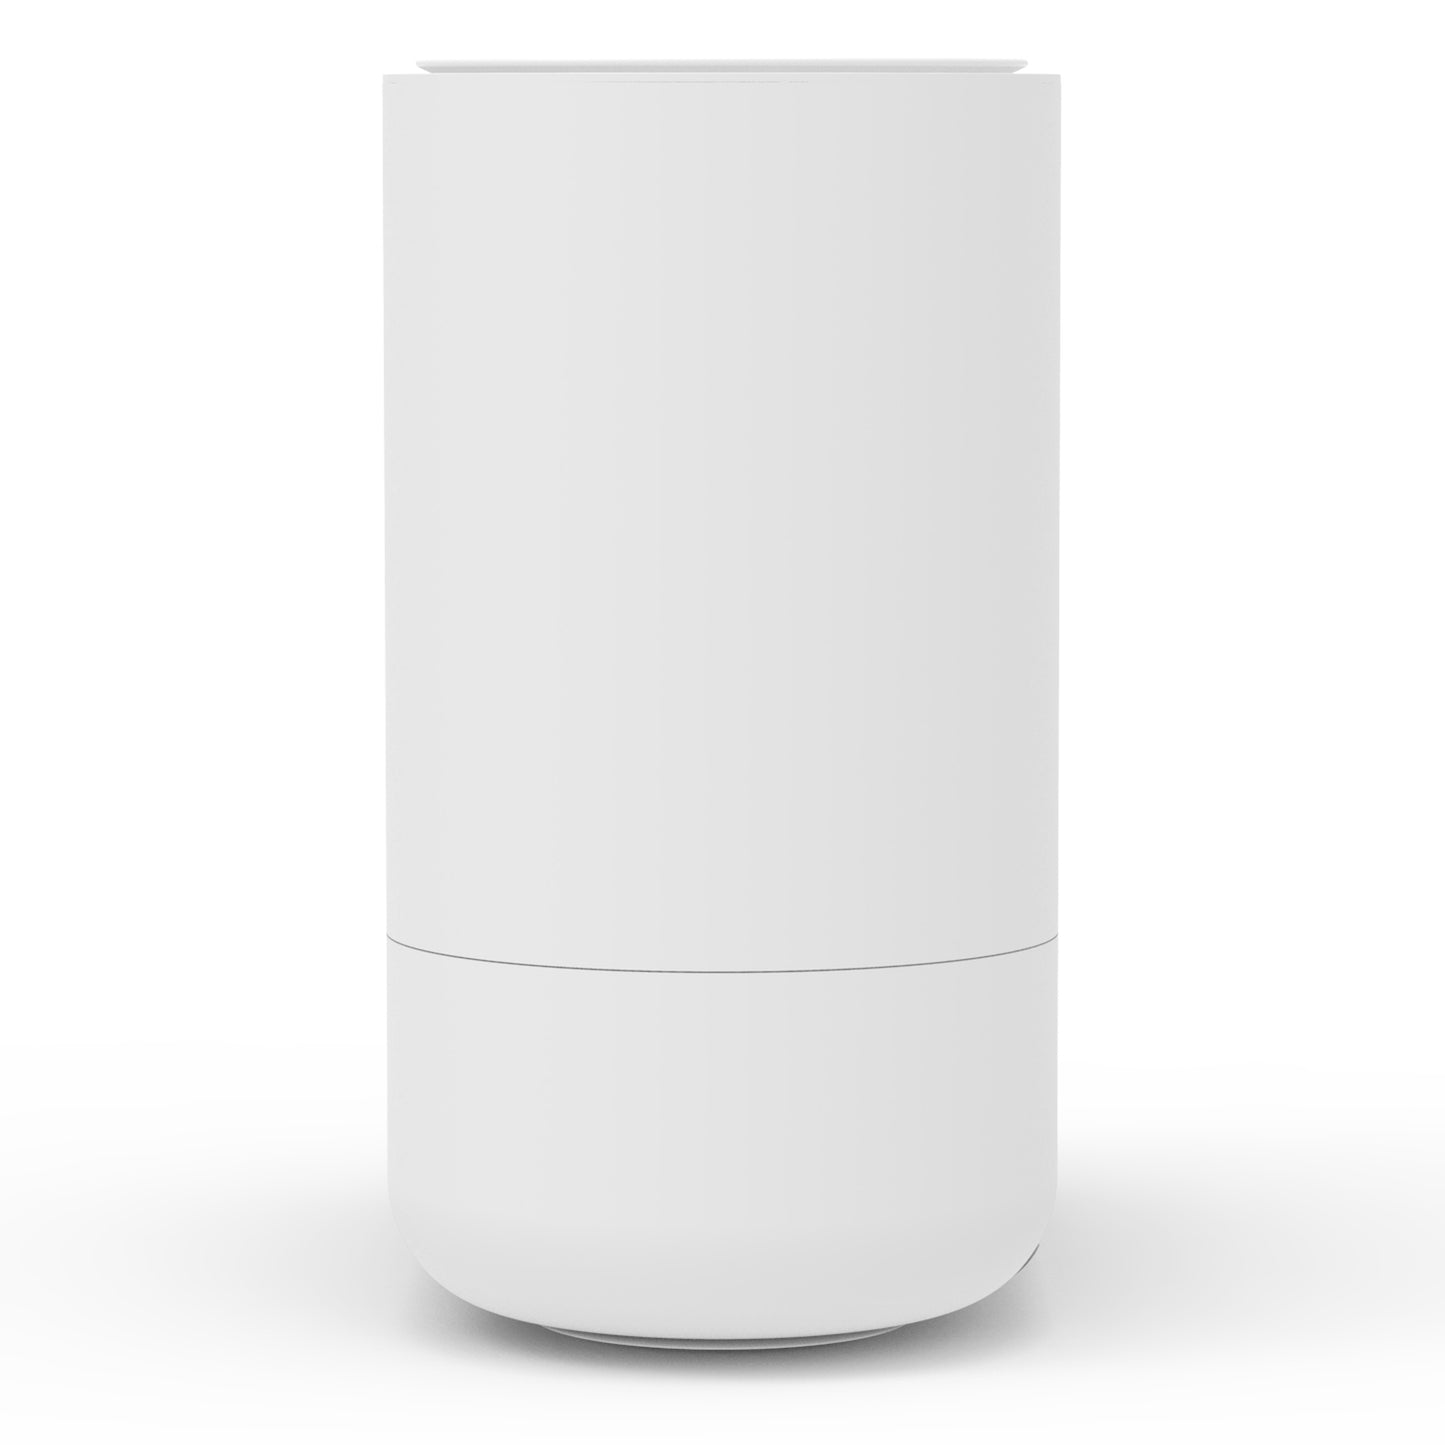 Trebs 49300 - Smarter Luftbefeuchter - Weiß